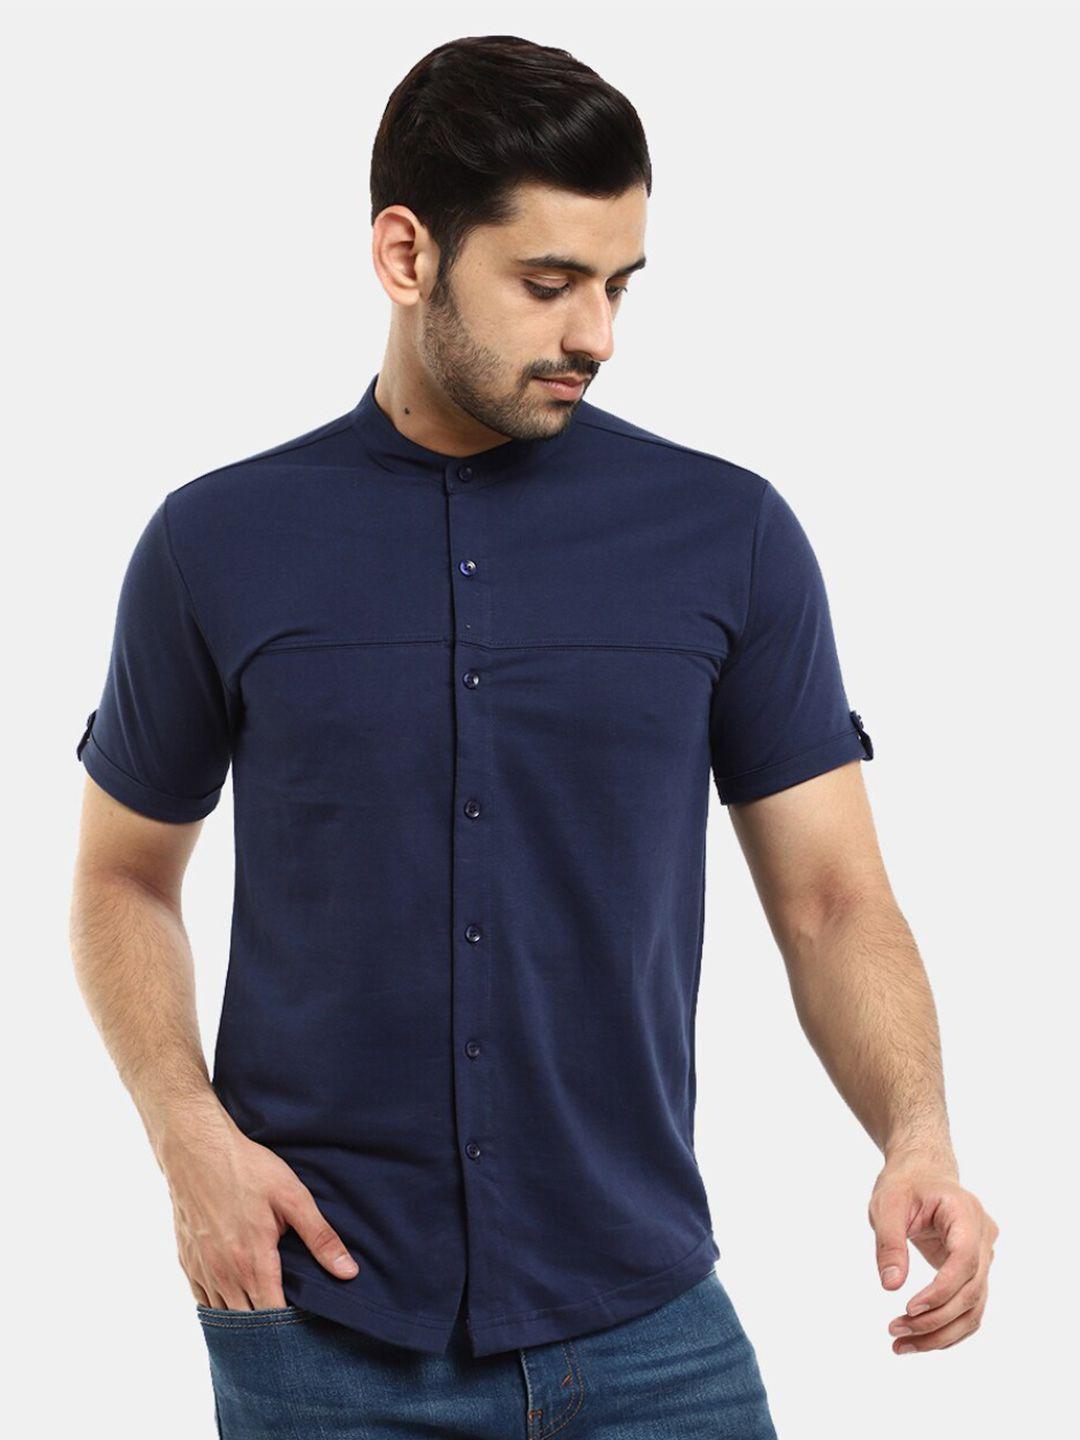 v-mart men navy blue mandarin collar t-shirt